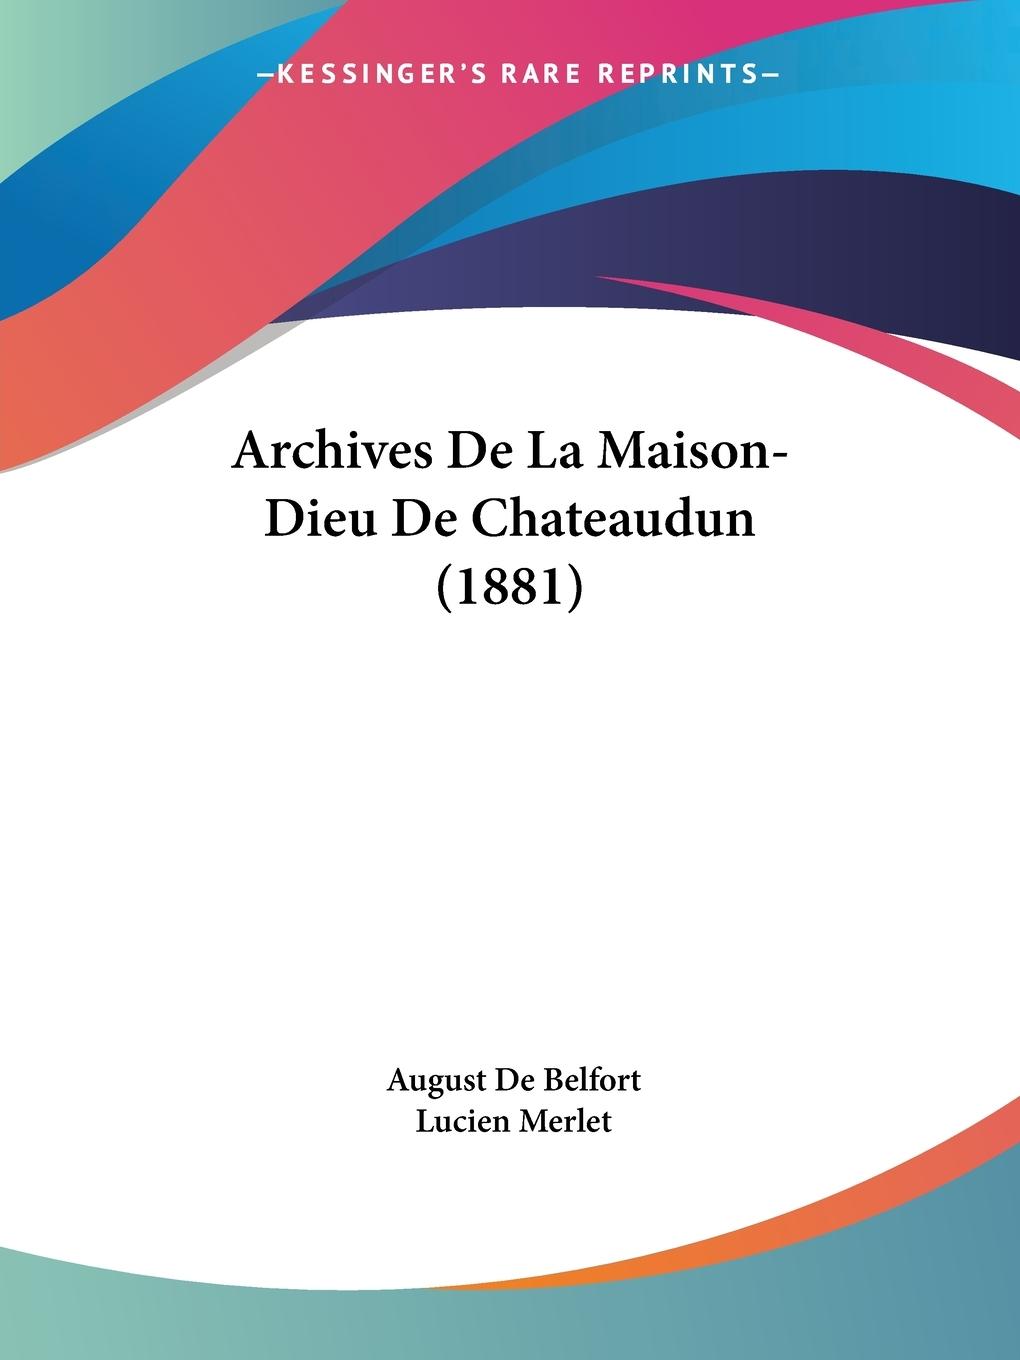 Archives De La Maison-Dieu De Chateaudun (1881) - De Belfort, August